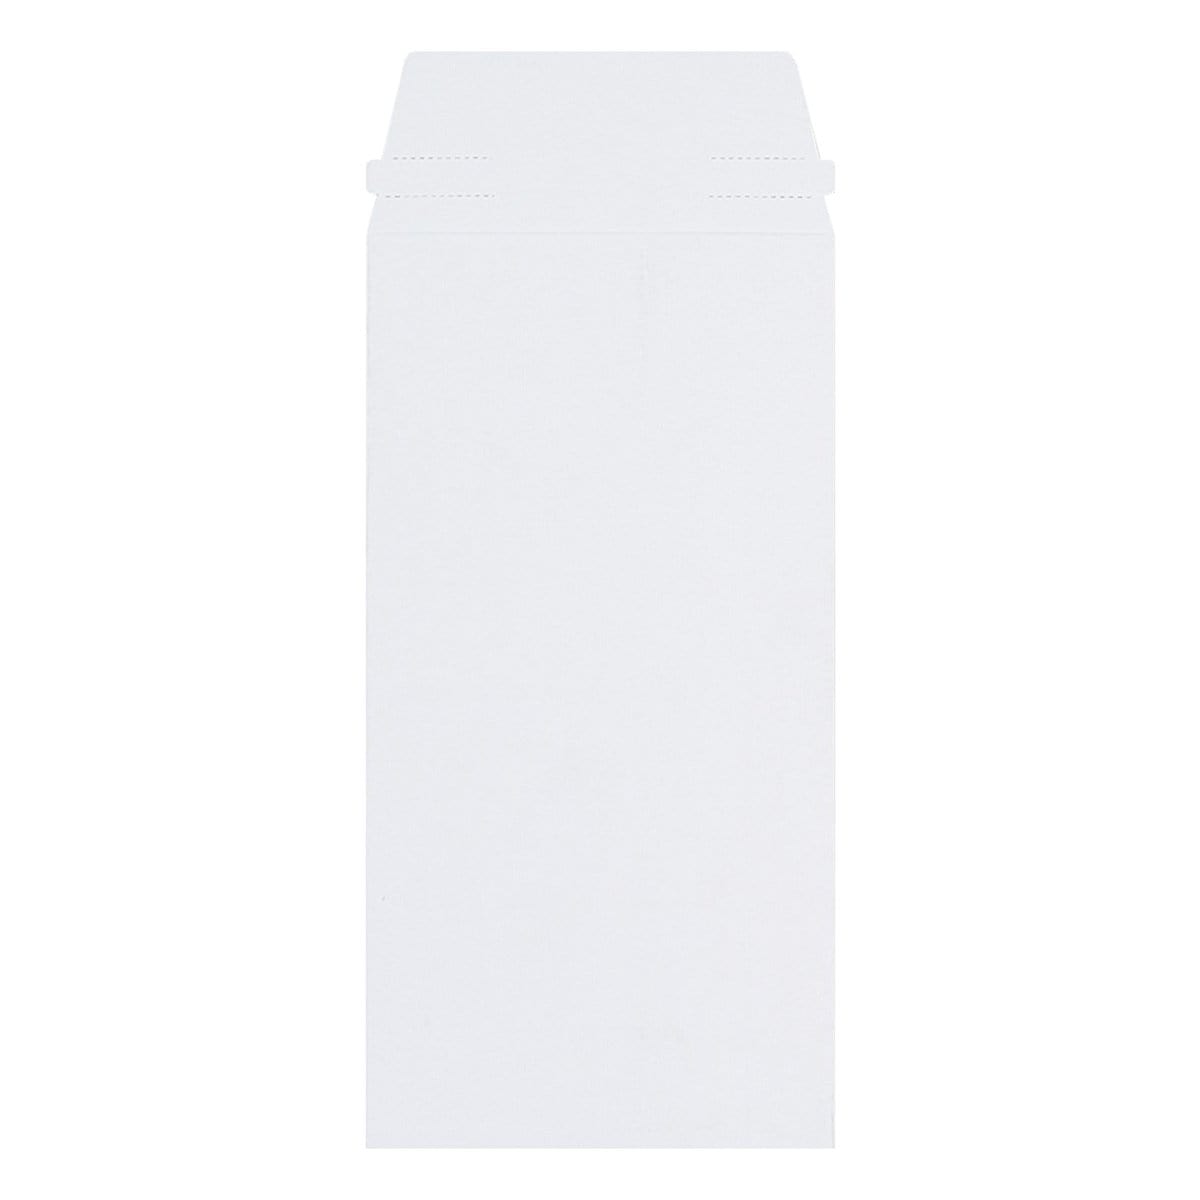 products/white-allboard-envelopes-dl.jpg